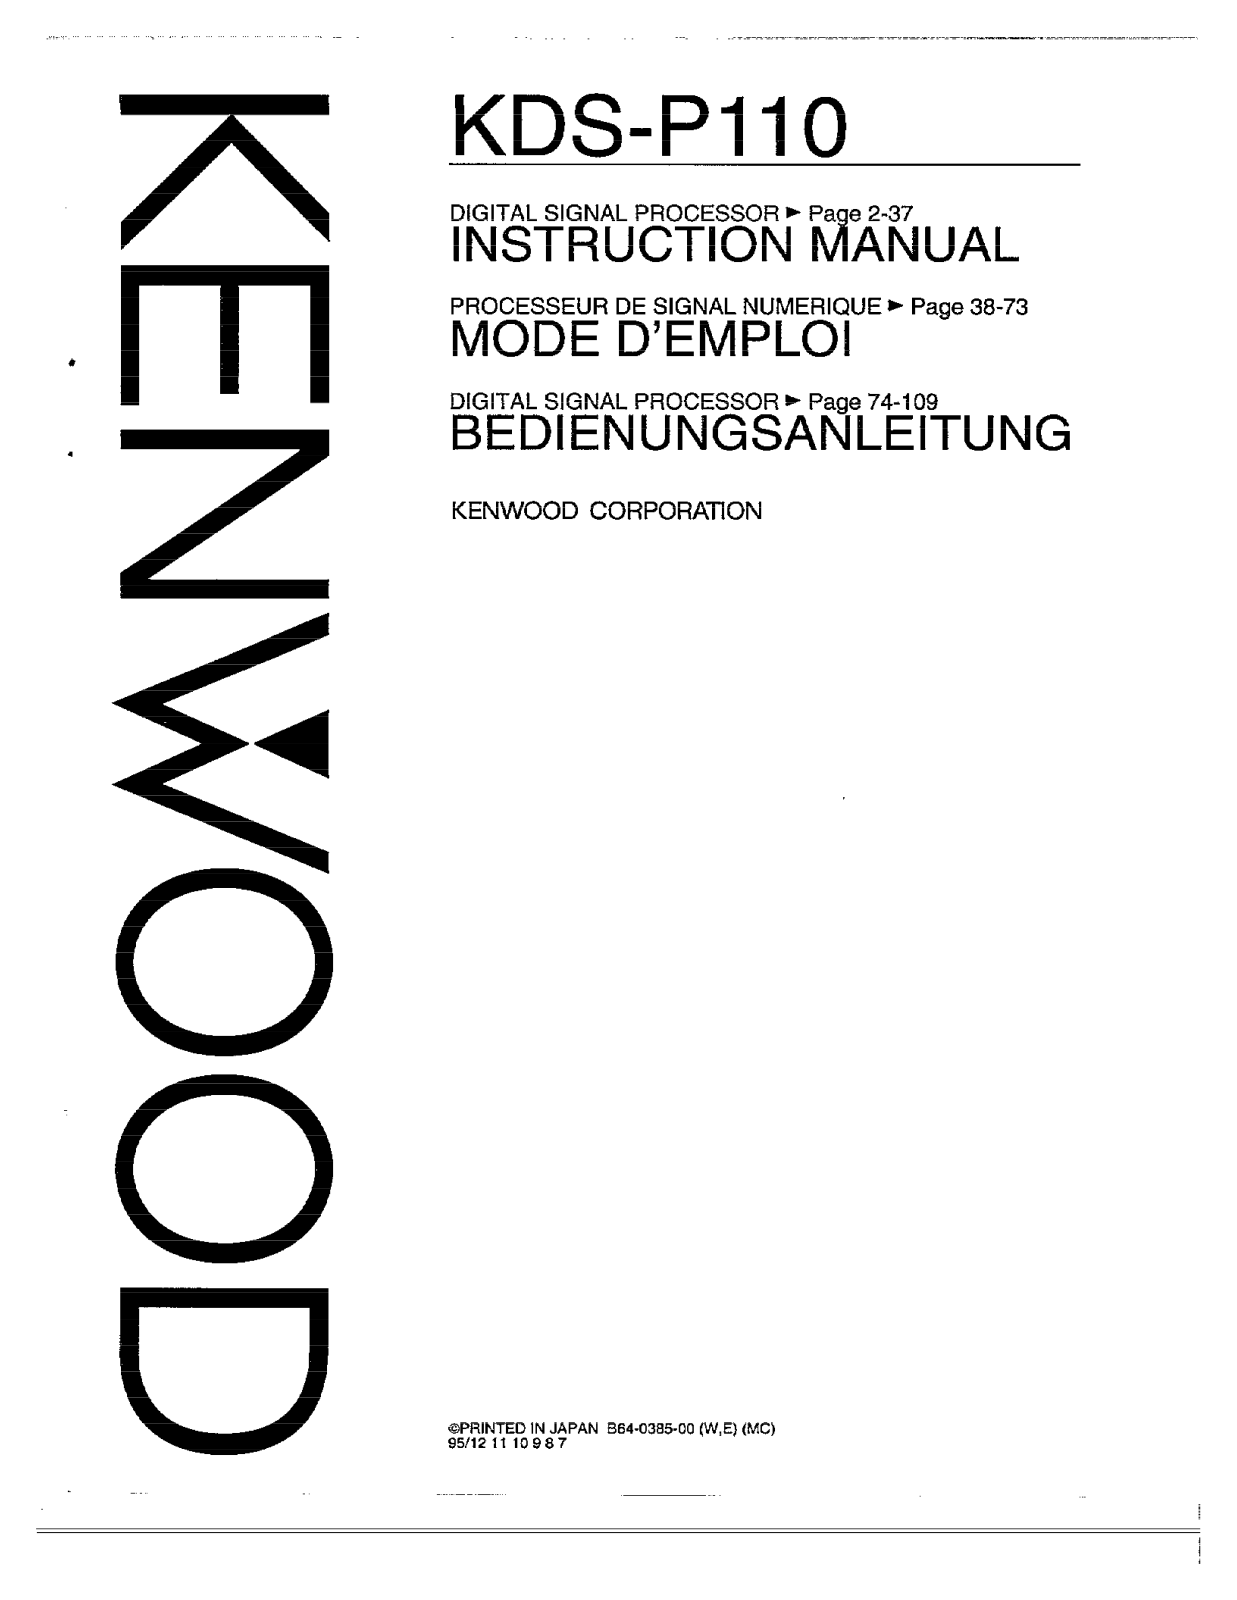 Kenwood KDS-P110 Owner's Manual